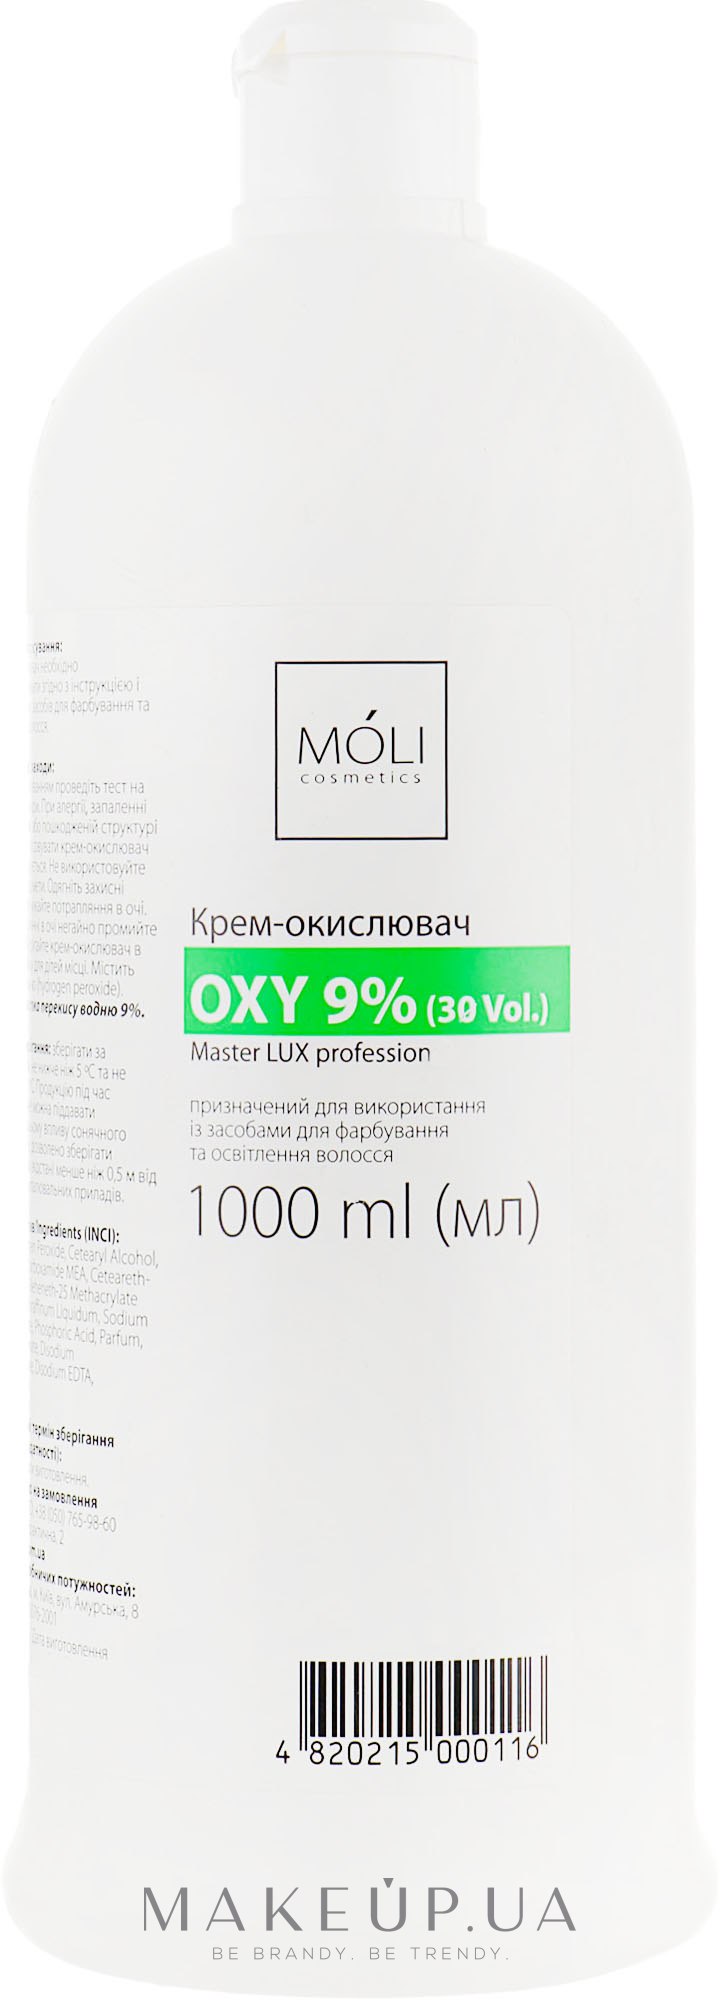 Окислювальна емульсія 9% - Moli Cosmetics Oxy 9% (30 Vol.) — фото 1000ml